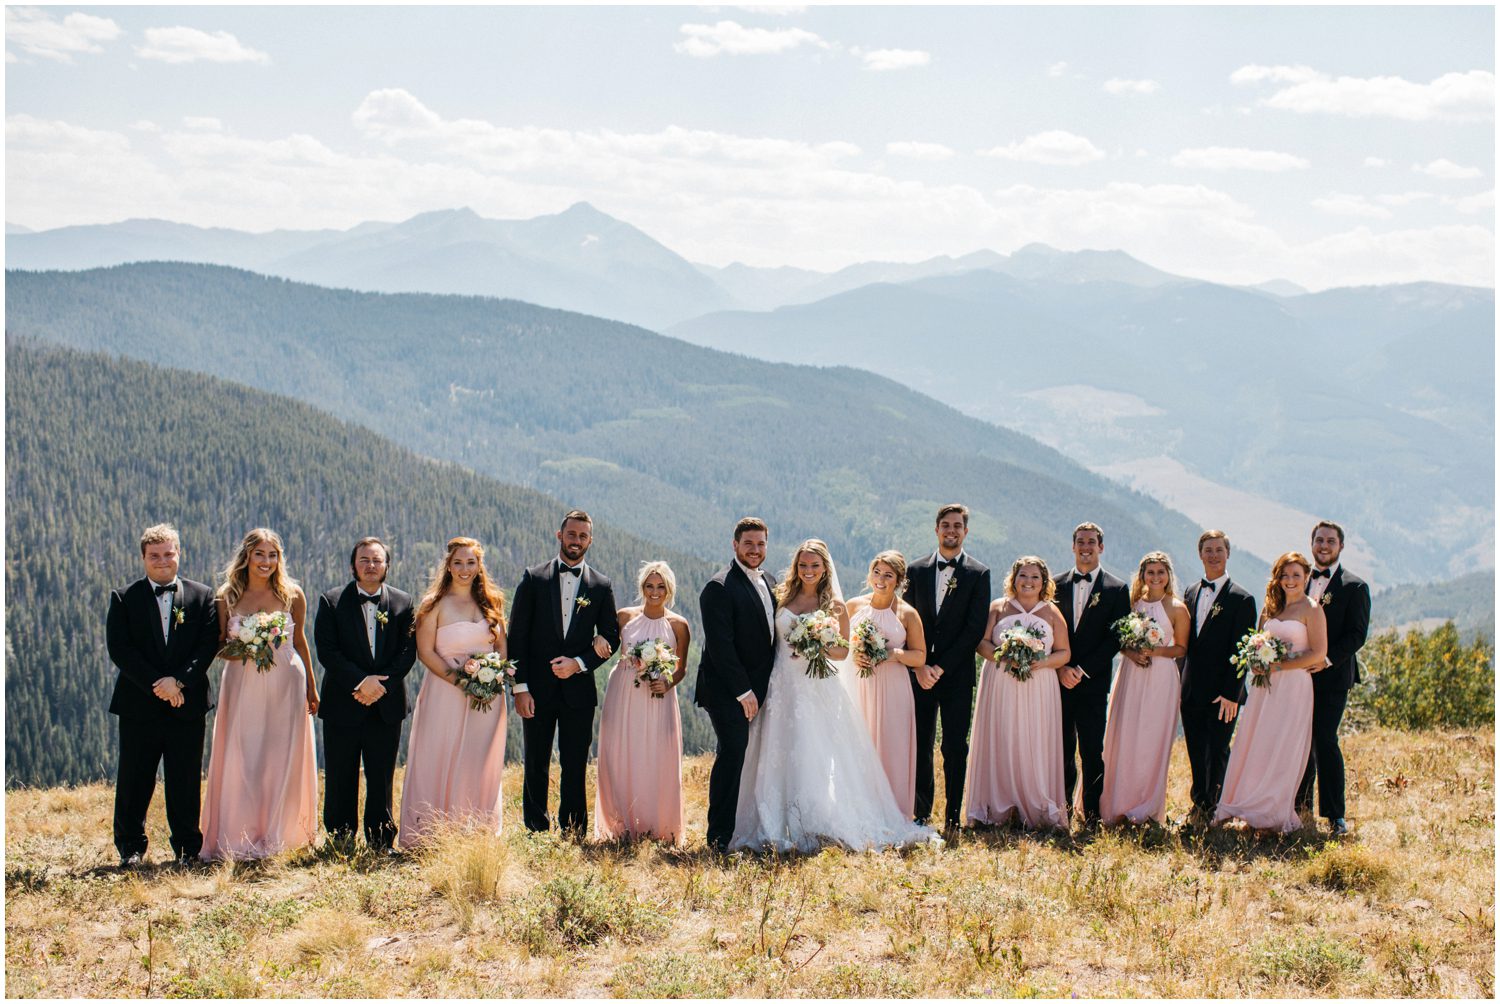 Bridal Party Photos, Vail Mountain Wedding Photos, Donovan Pavilion Vail Colorado Wedding Photos, Weddington Way, Blush Bridesmaids Dresses